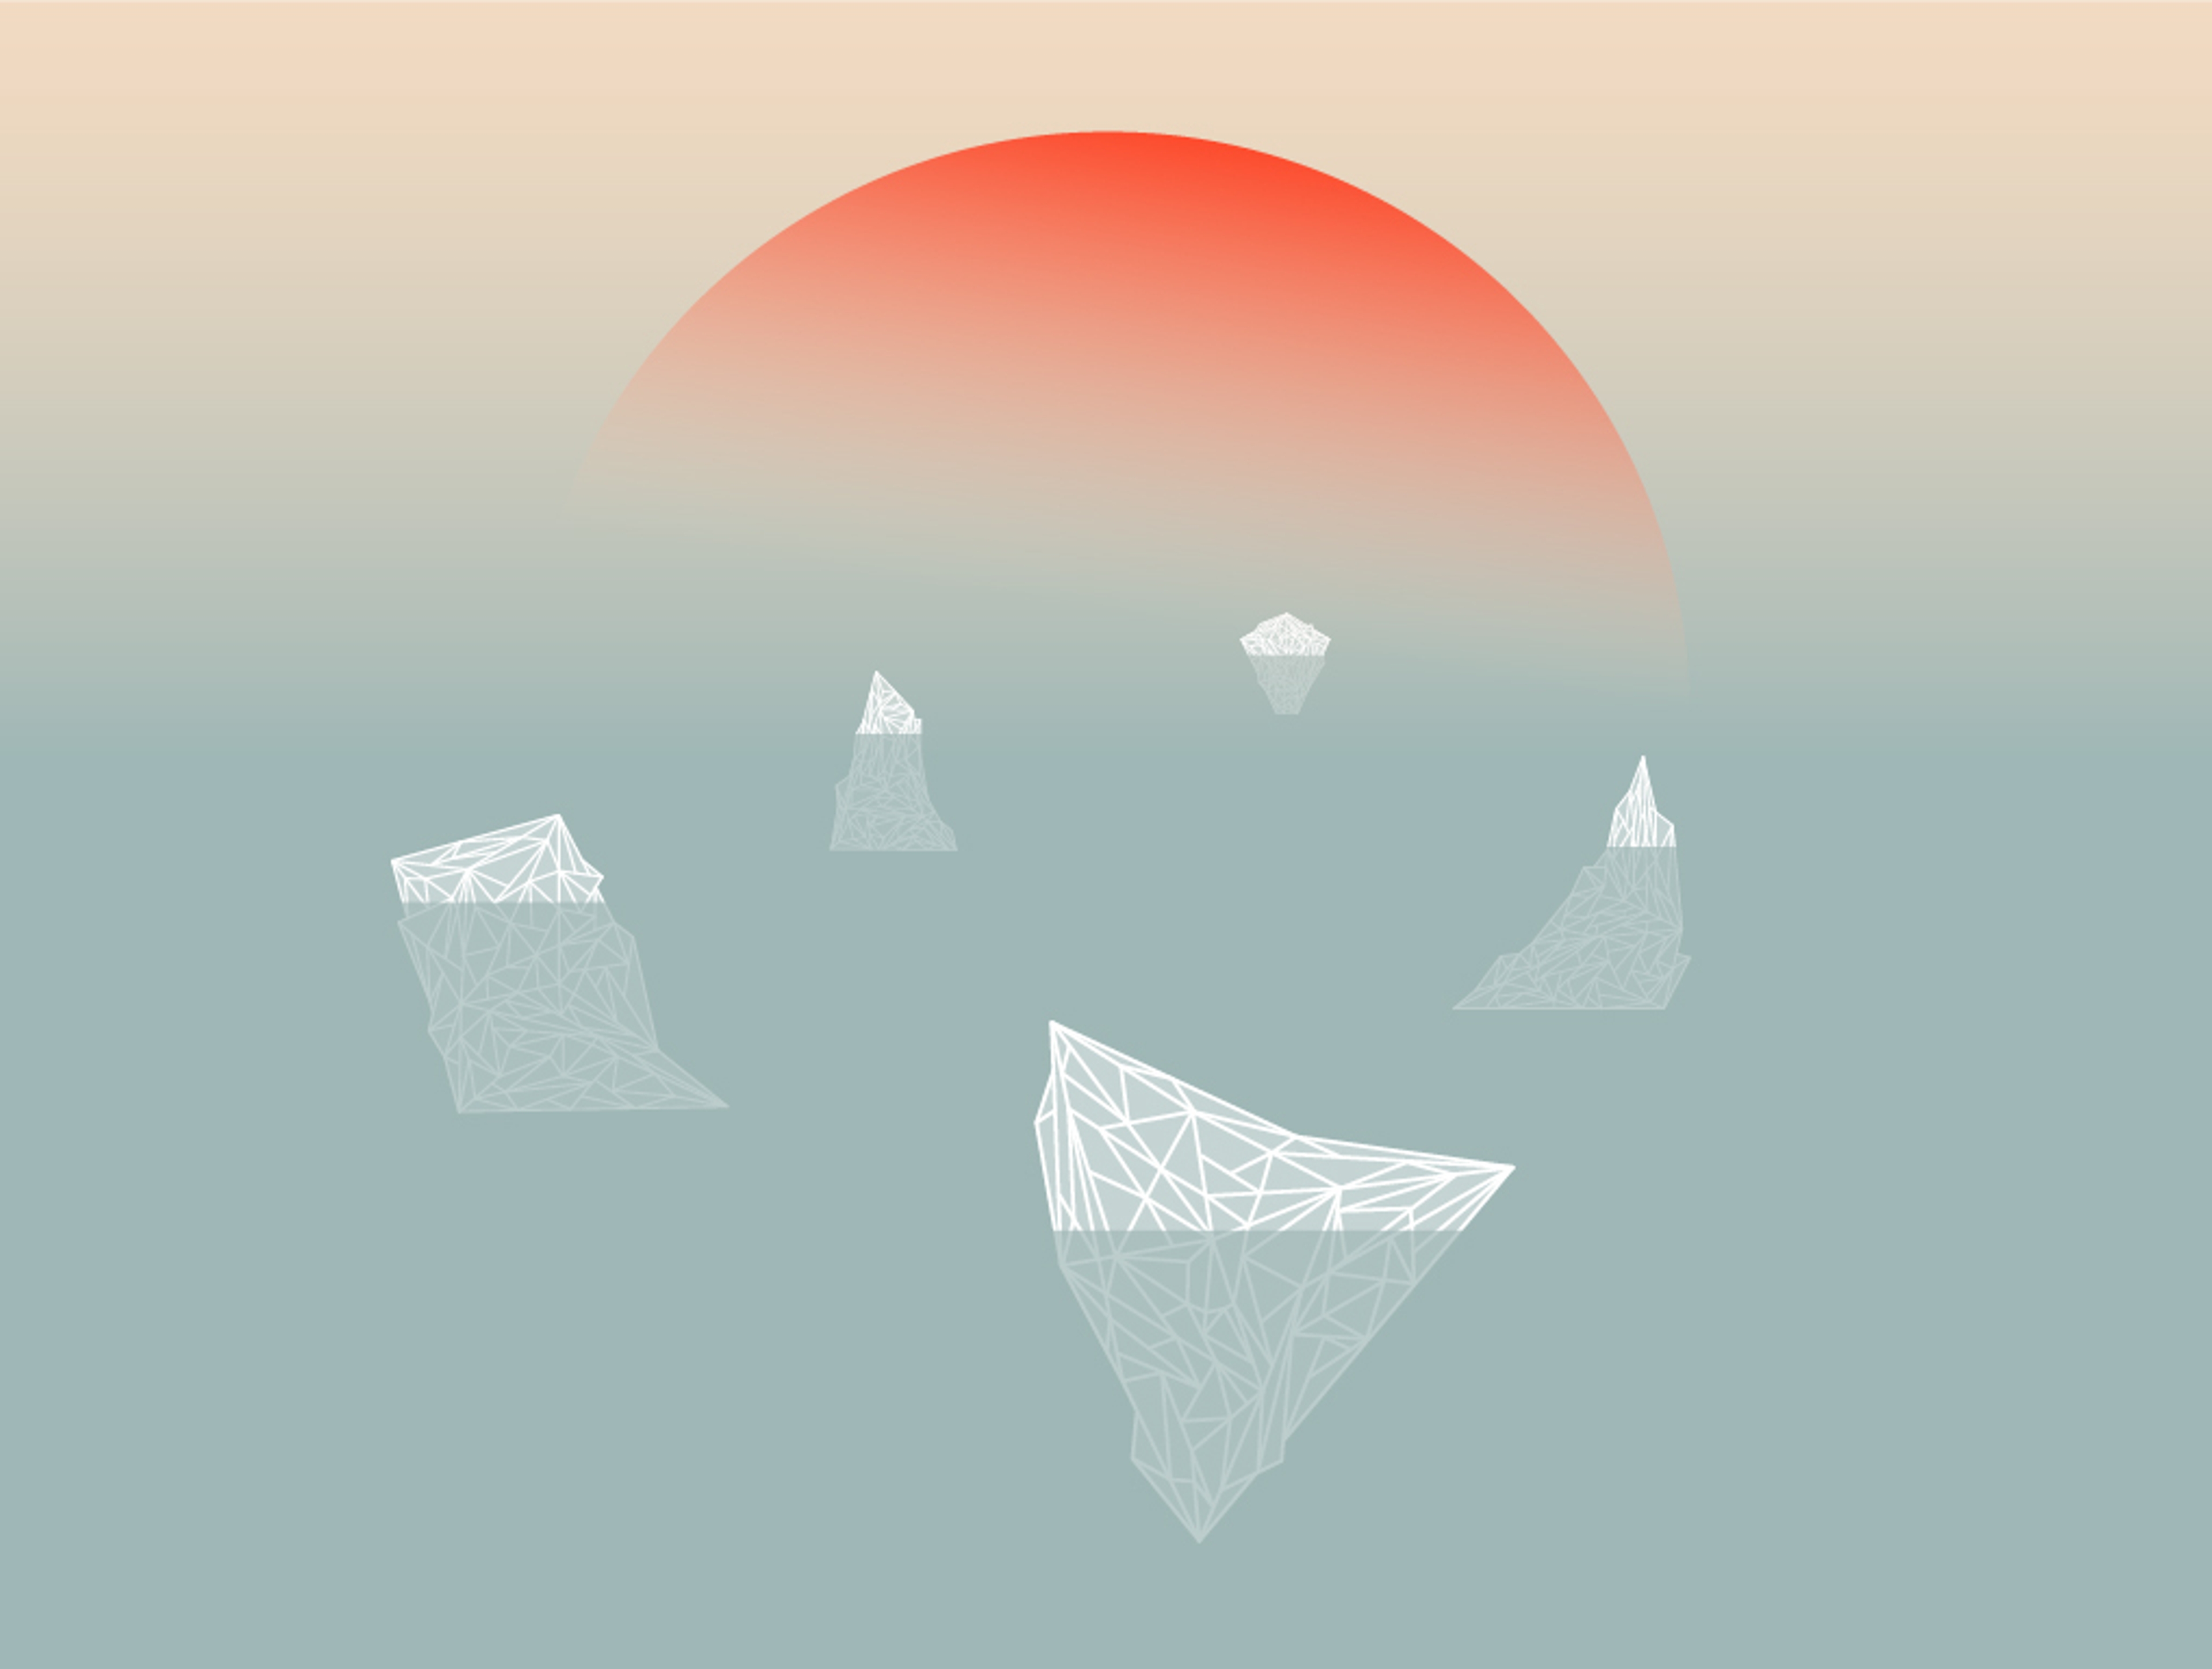 Illustration du chapitre "iceberg" montrant une grille de polygones à base résolutions de différentes postures humaines